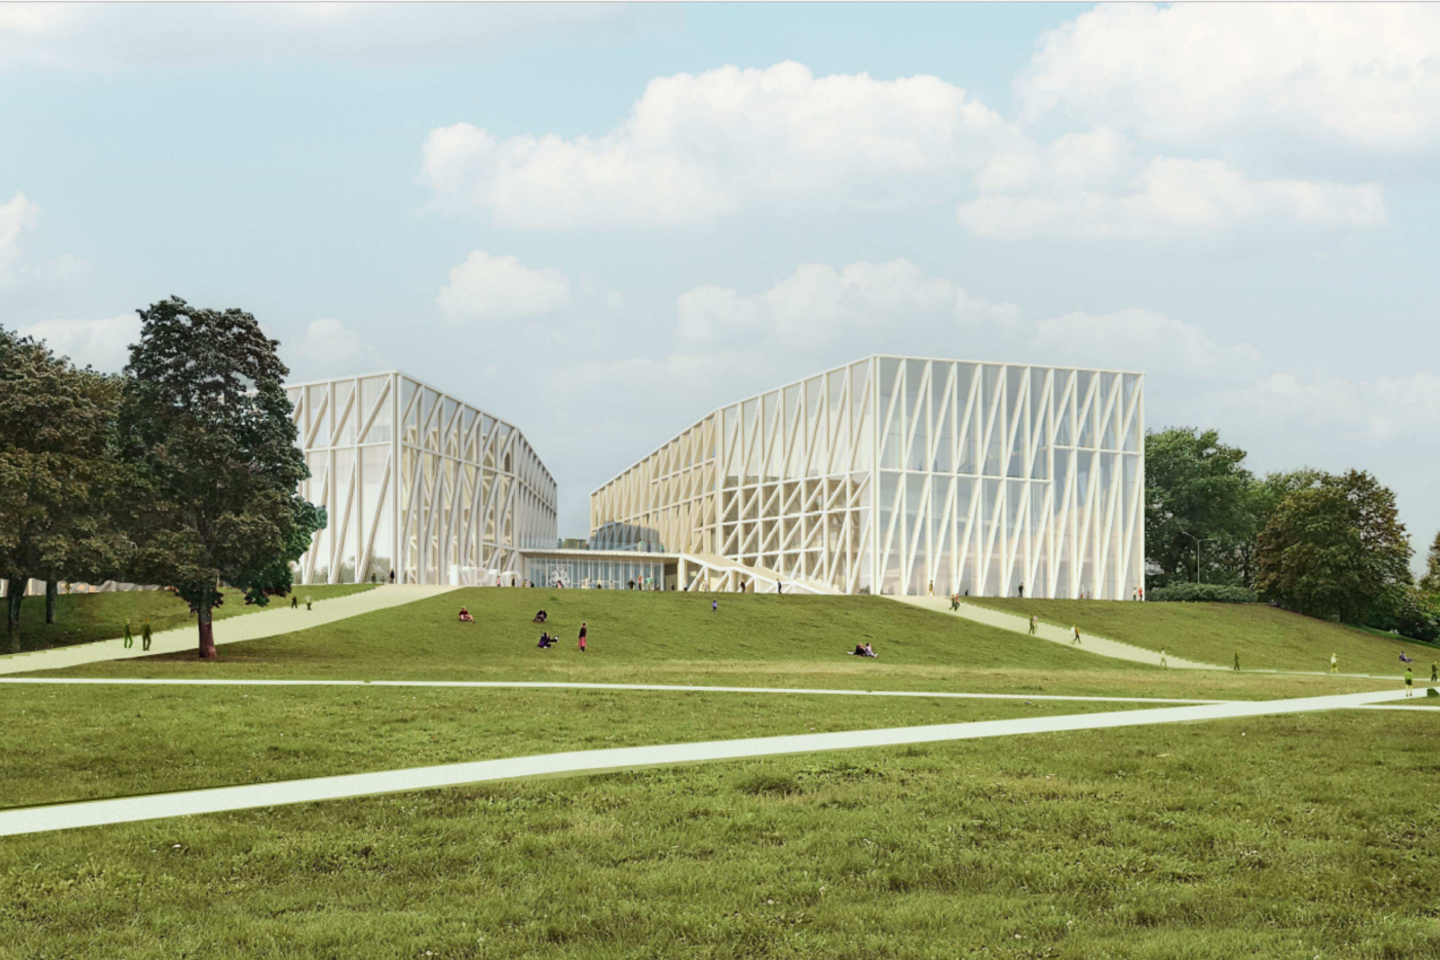 Visuomenei architektai pristatė nacionalinės koncertų salės projektinius pasiūlymus, kuriuos parengė ispanai „Arquivio architects“, bendradarbiaujant su lietuviais „Cloud architektai“.<br>Vizual.